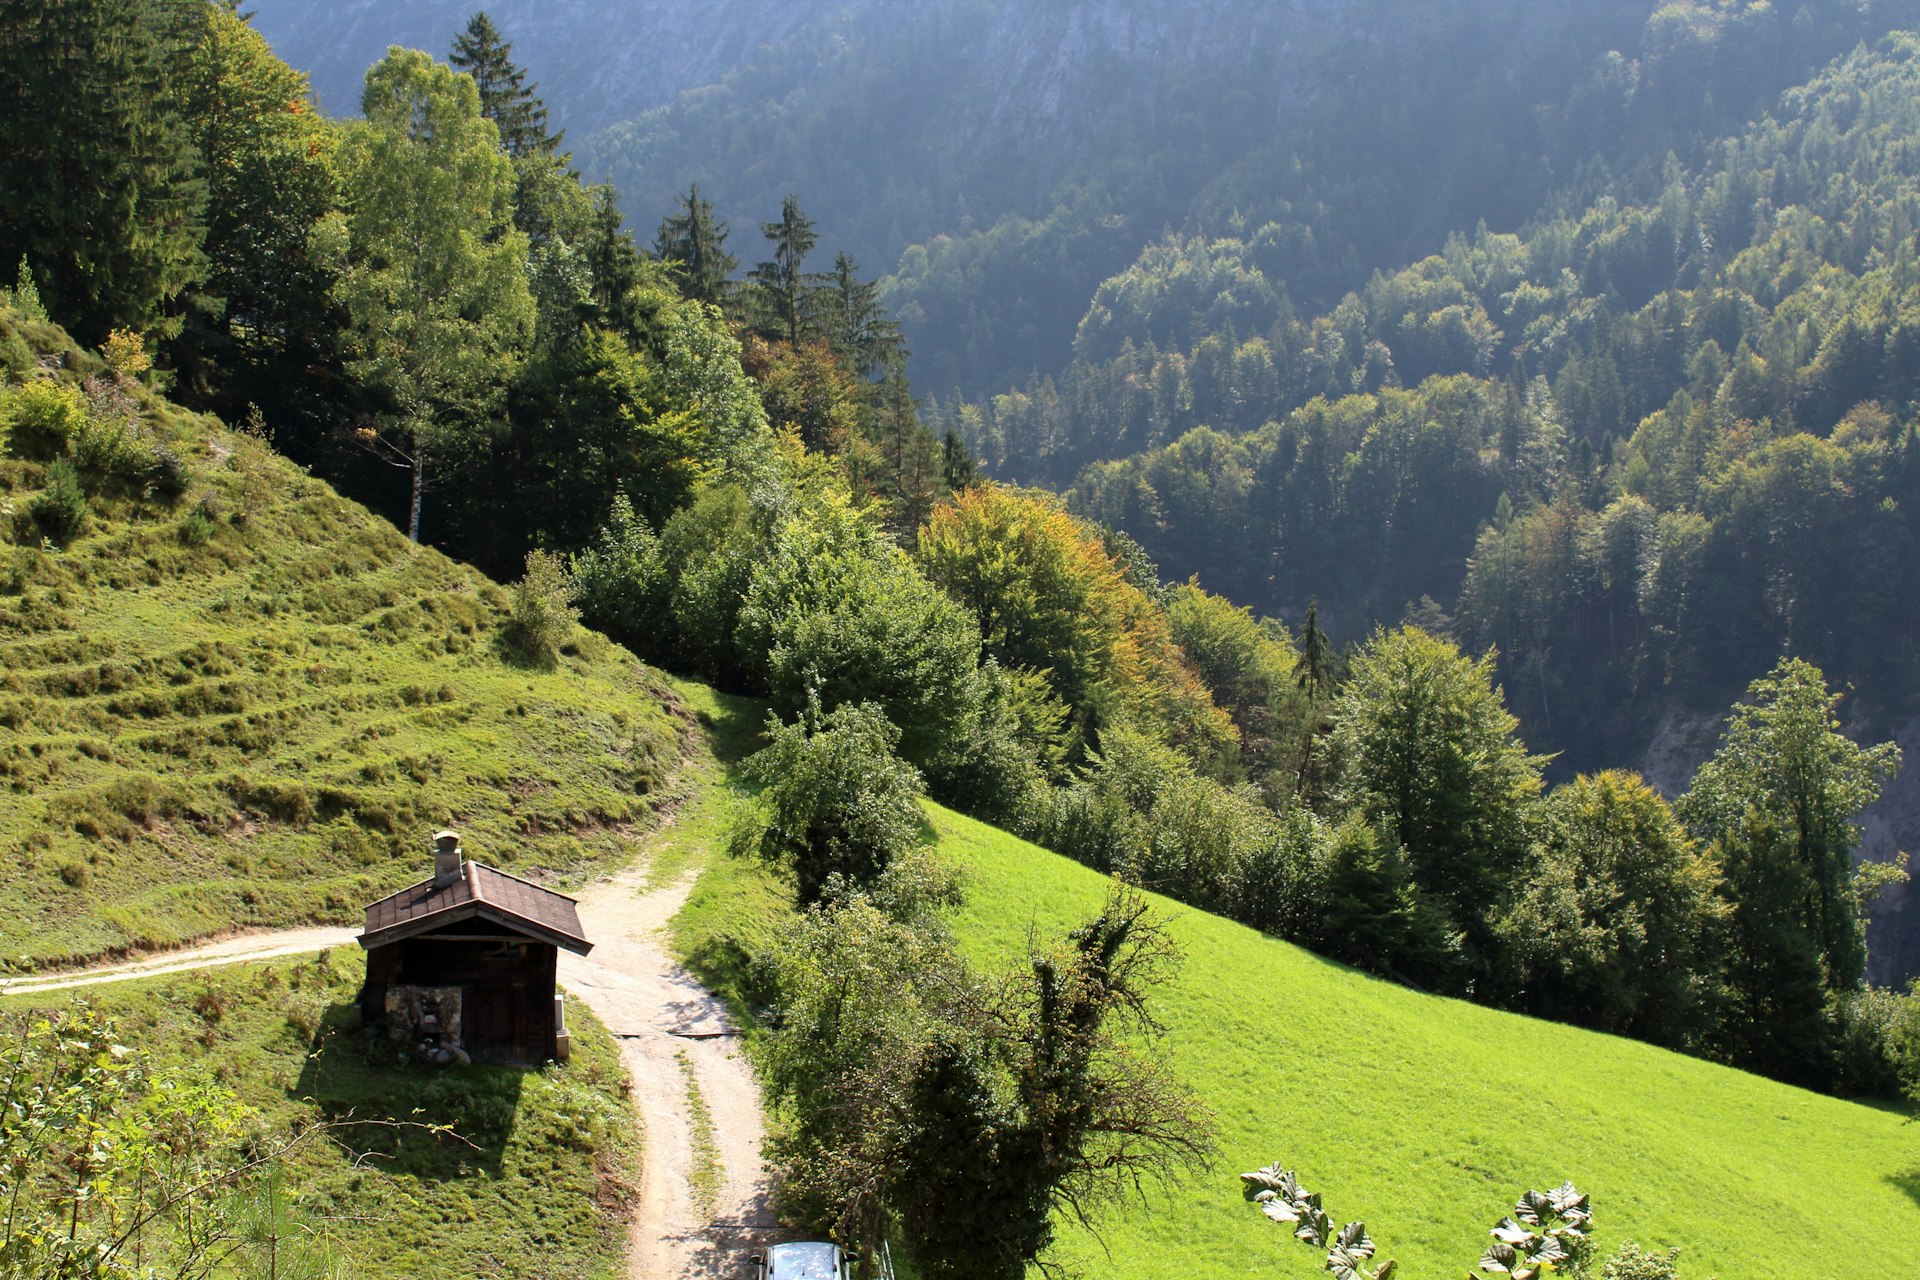 Hiking the mountains of Kufstein, Austria